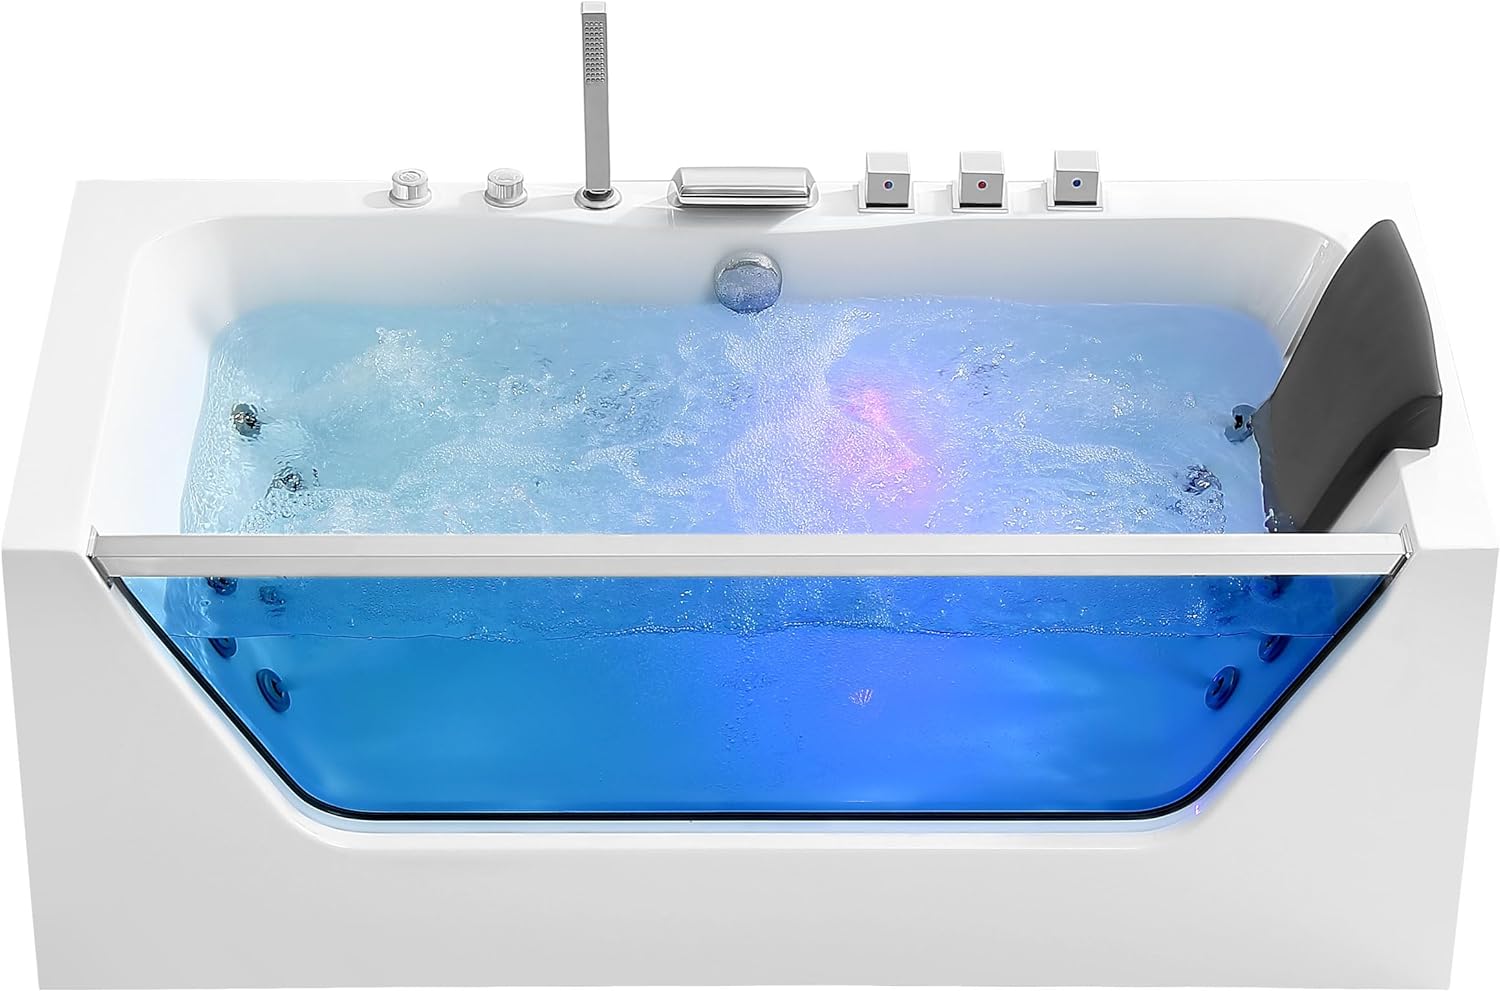 Why Is Bathtub Water Blue